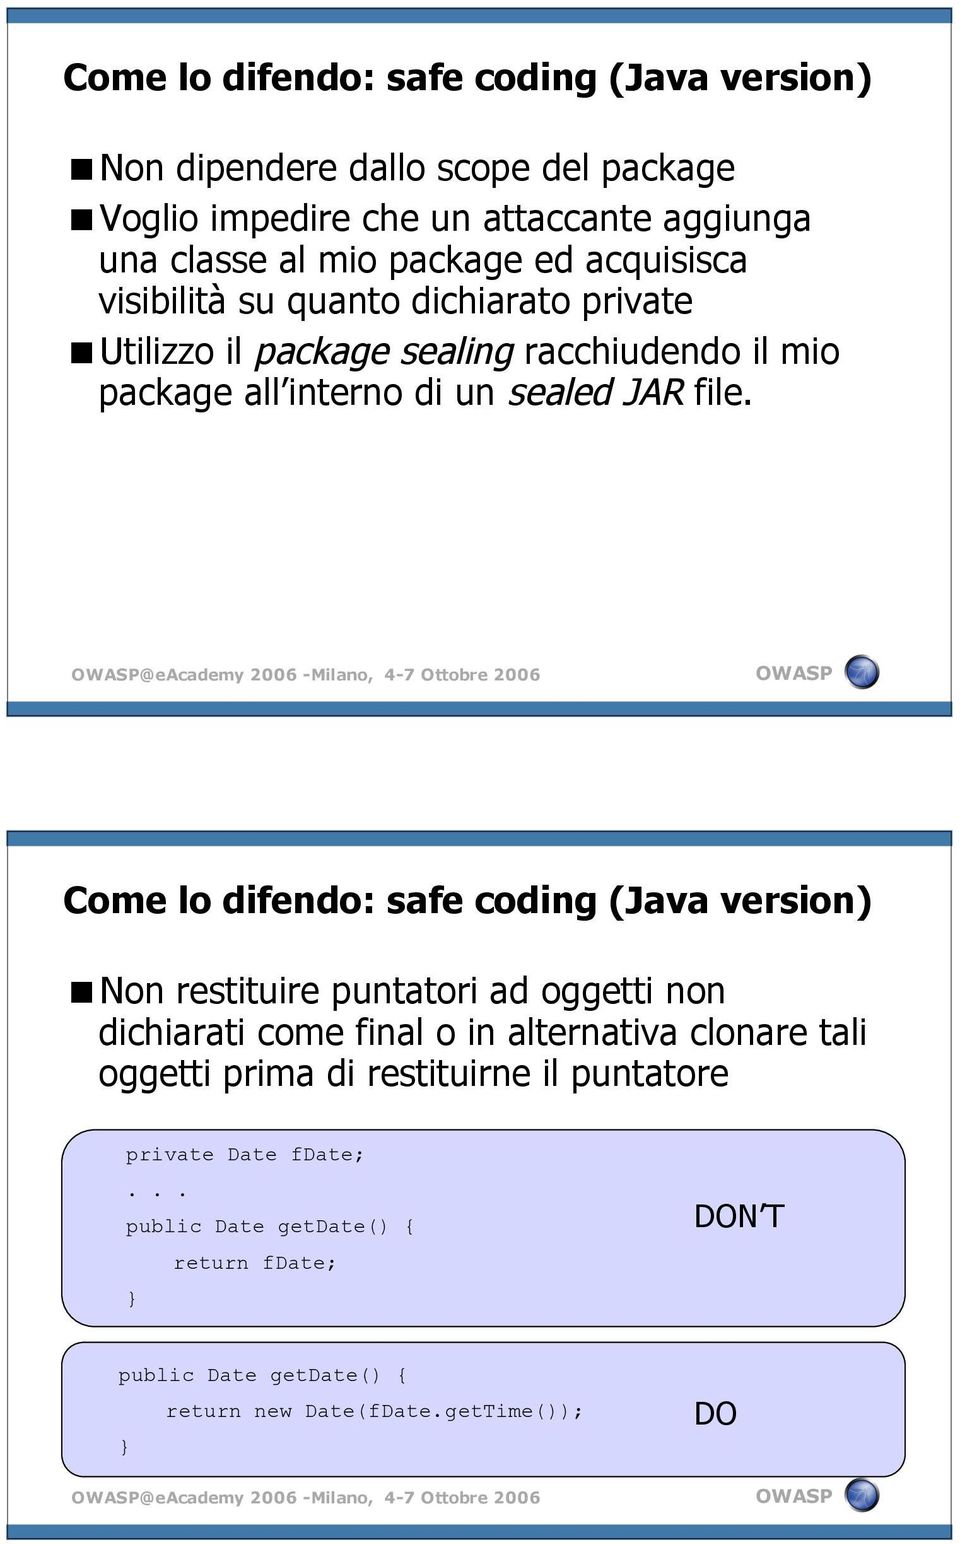 @eacademy 2006 -Milano, 4-7 Ottobre 2006 Come lo difendo: safe coding (Java version) Non restituire puntatori ad oggetti non dichiarati come final o in alternativa clonare